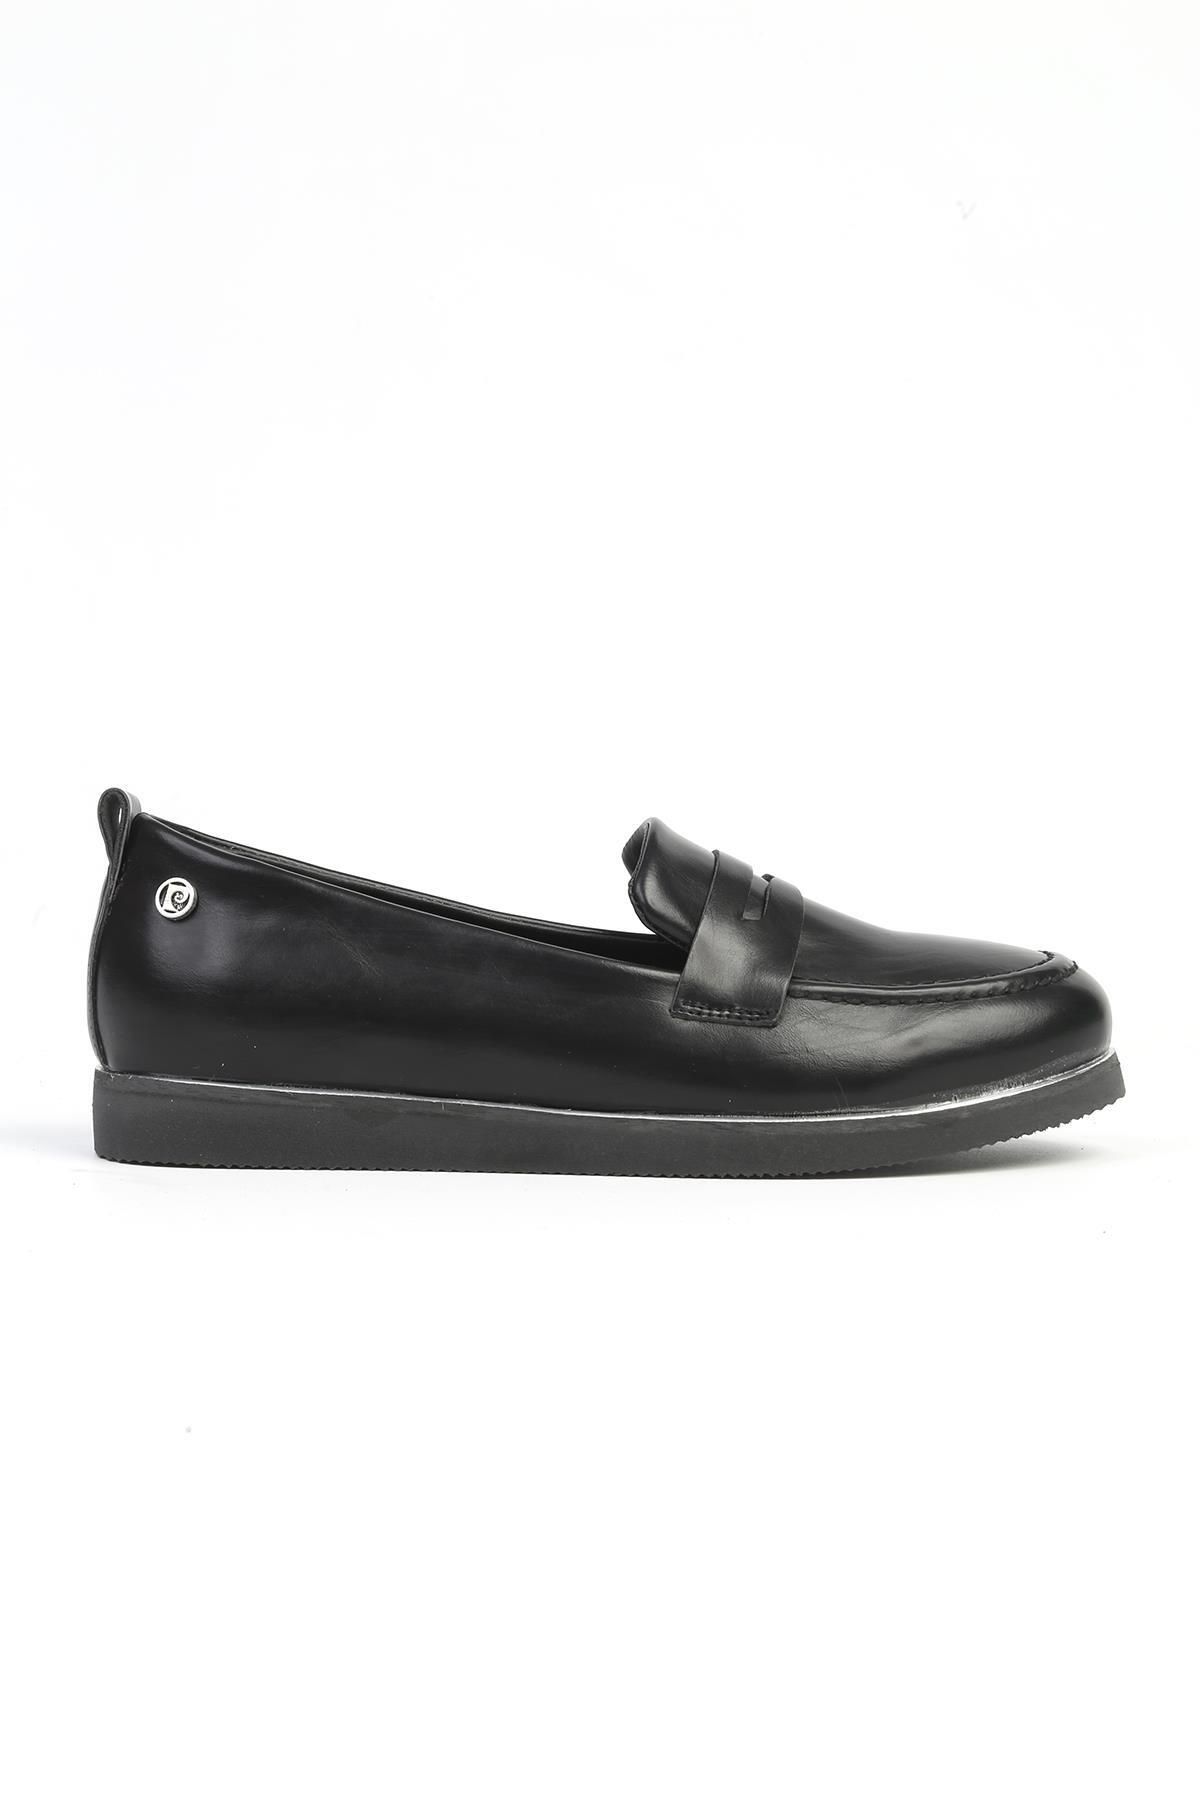 Pierre Cardin ® | PC-52642 - 3441 Siyah - Kadın Günlük Ayakkabı